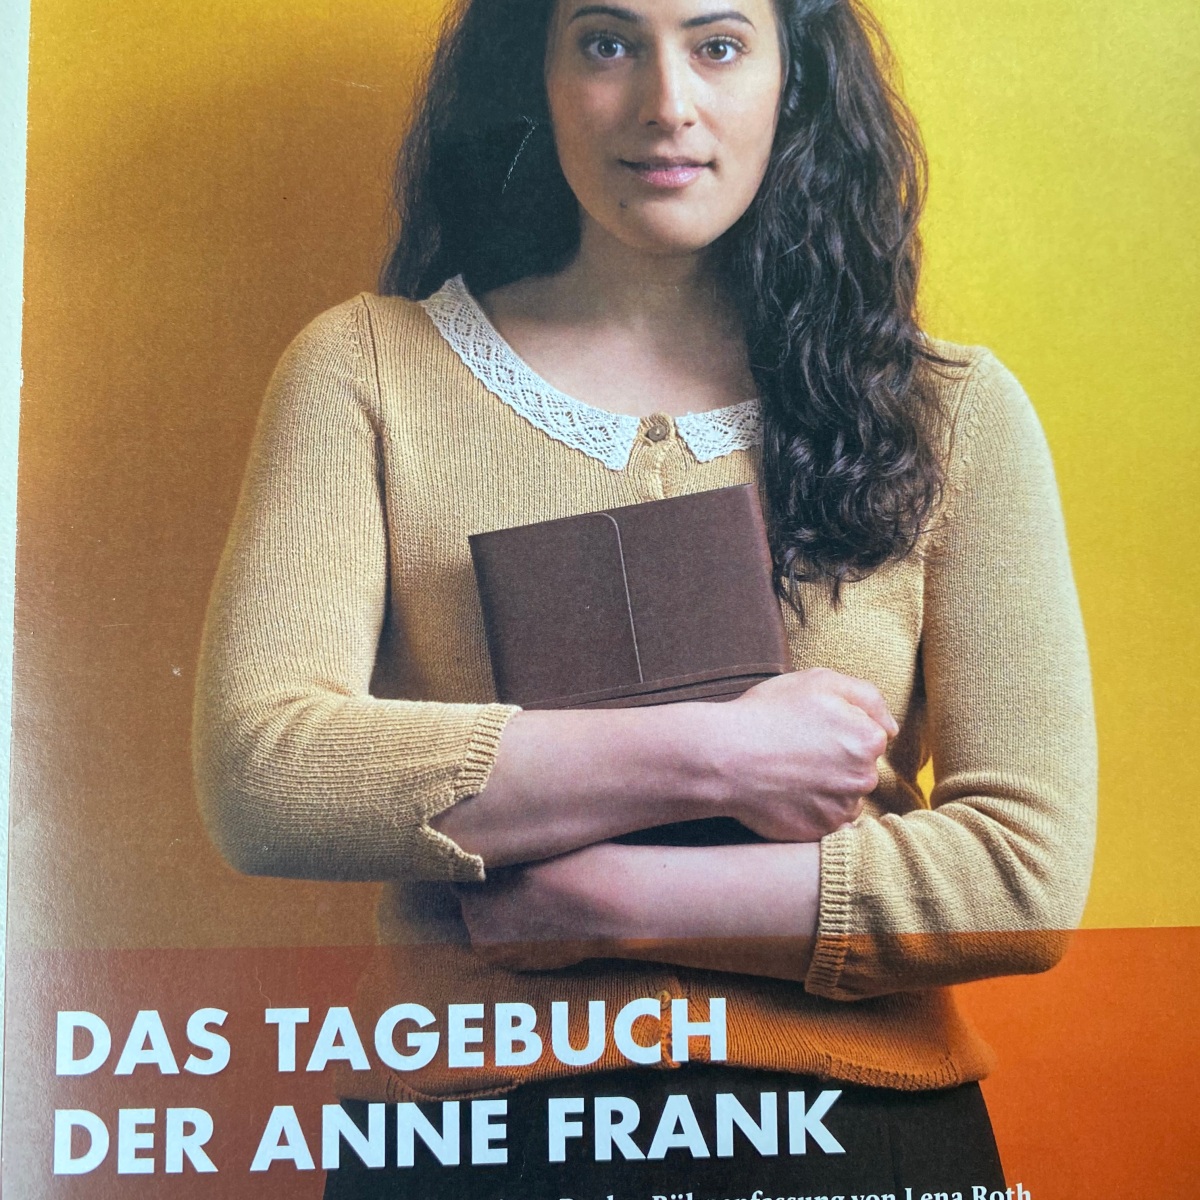 „Das Tagebuch der Anne Frank“ als Theaterstück – Rezension der 8b